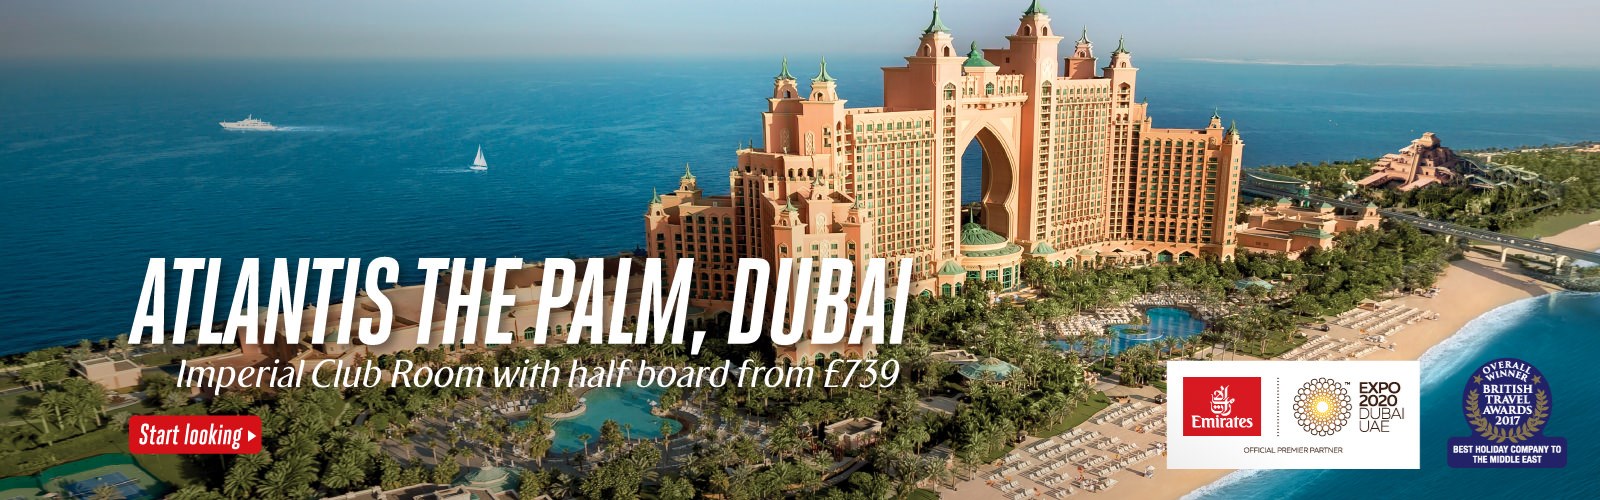 emirates holidays travel agents login